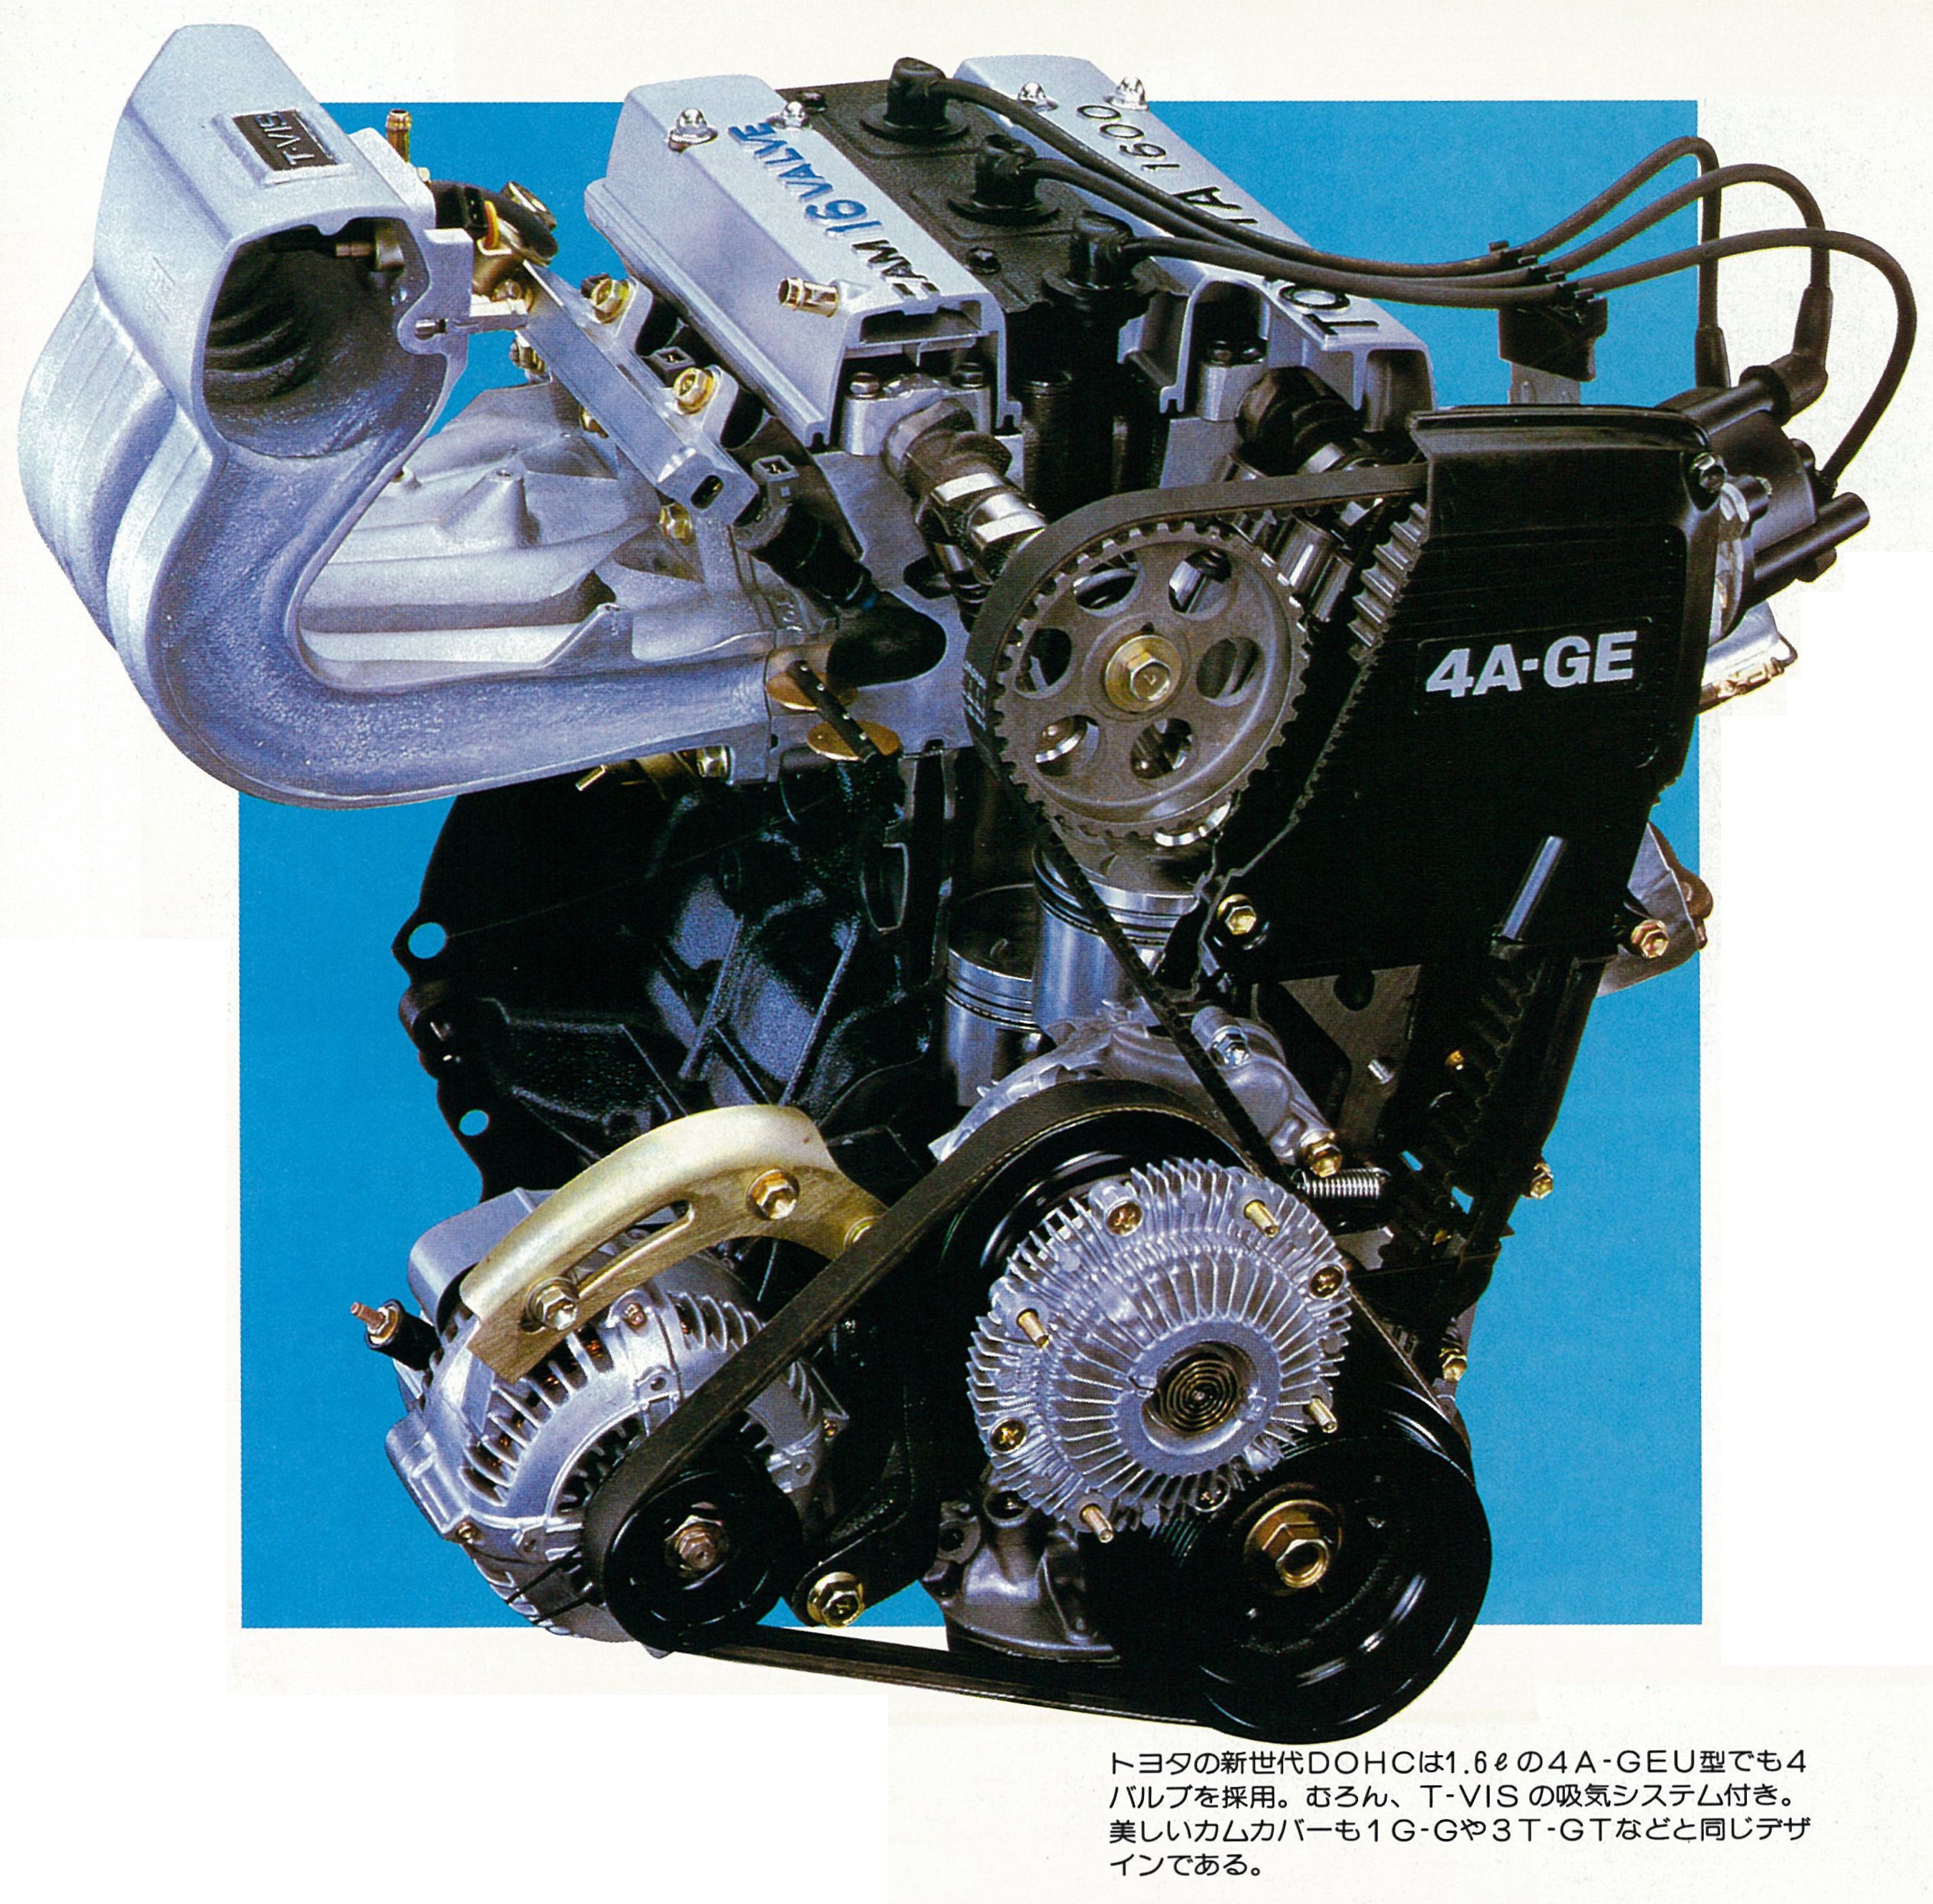 AE86が遂に発売！ 歴史を刻む一歩はここから始まった【OPTION 1983年7